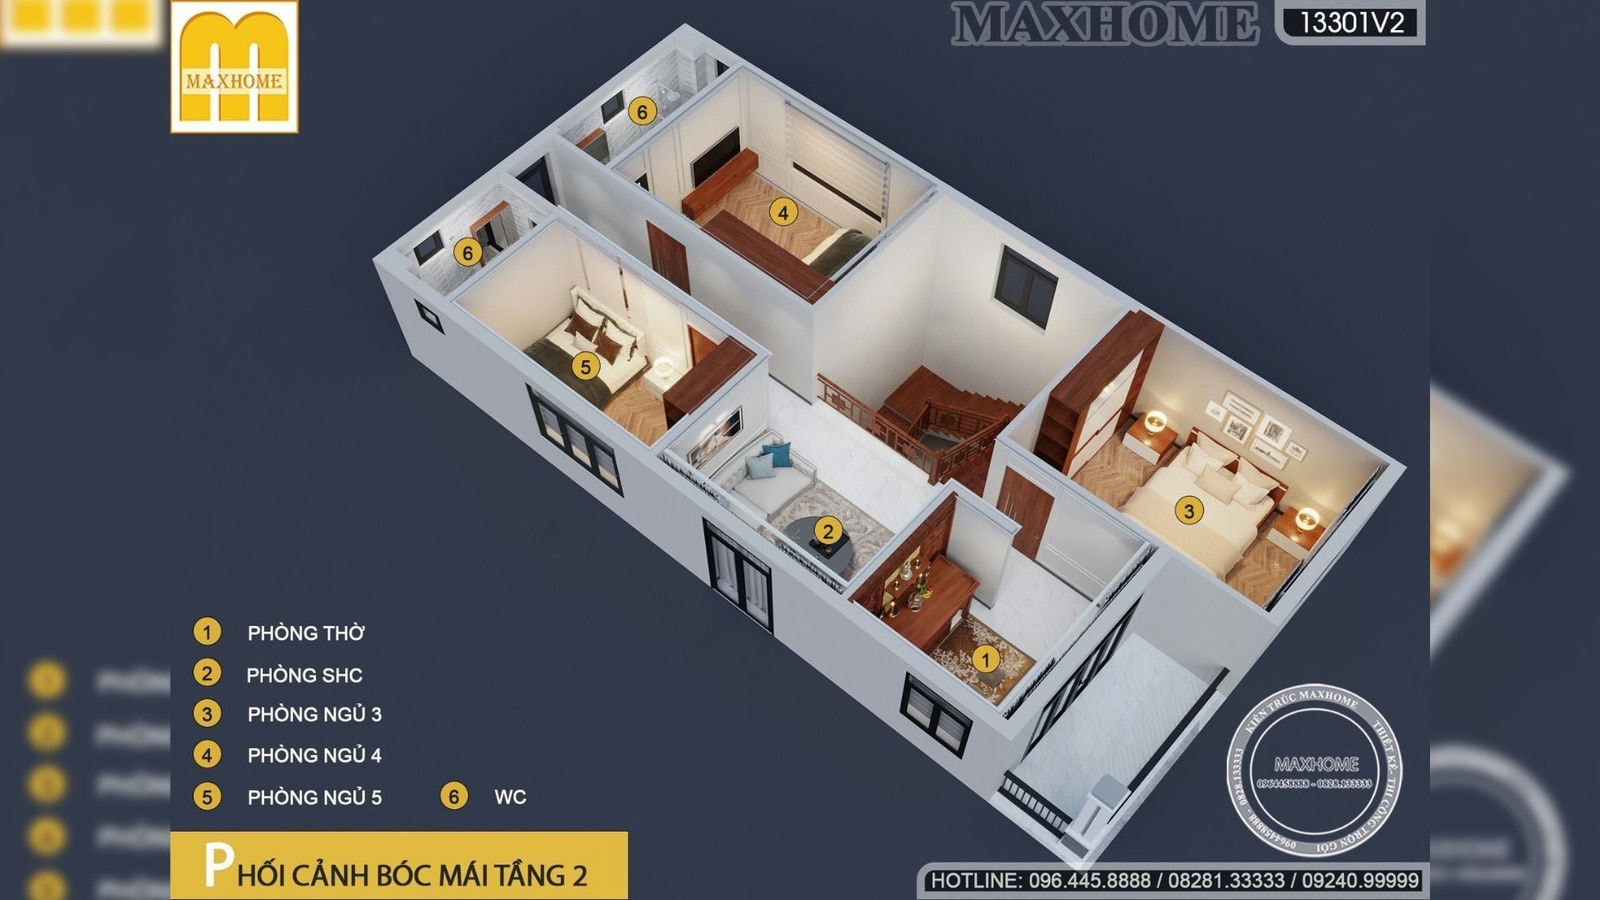 Maxhome thiết kế thi công trọn gói cho nhà 2 tầng mái Nhật hot | MH01682